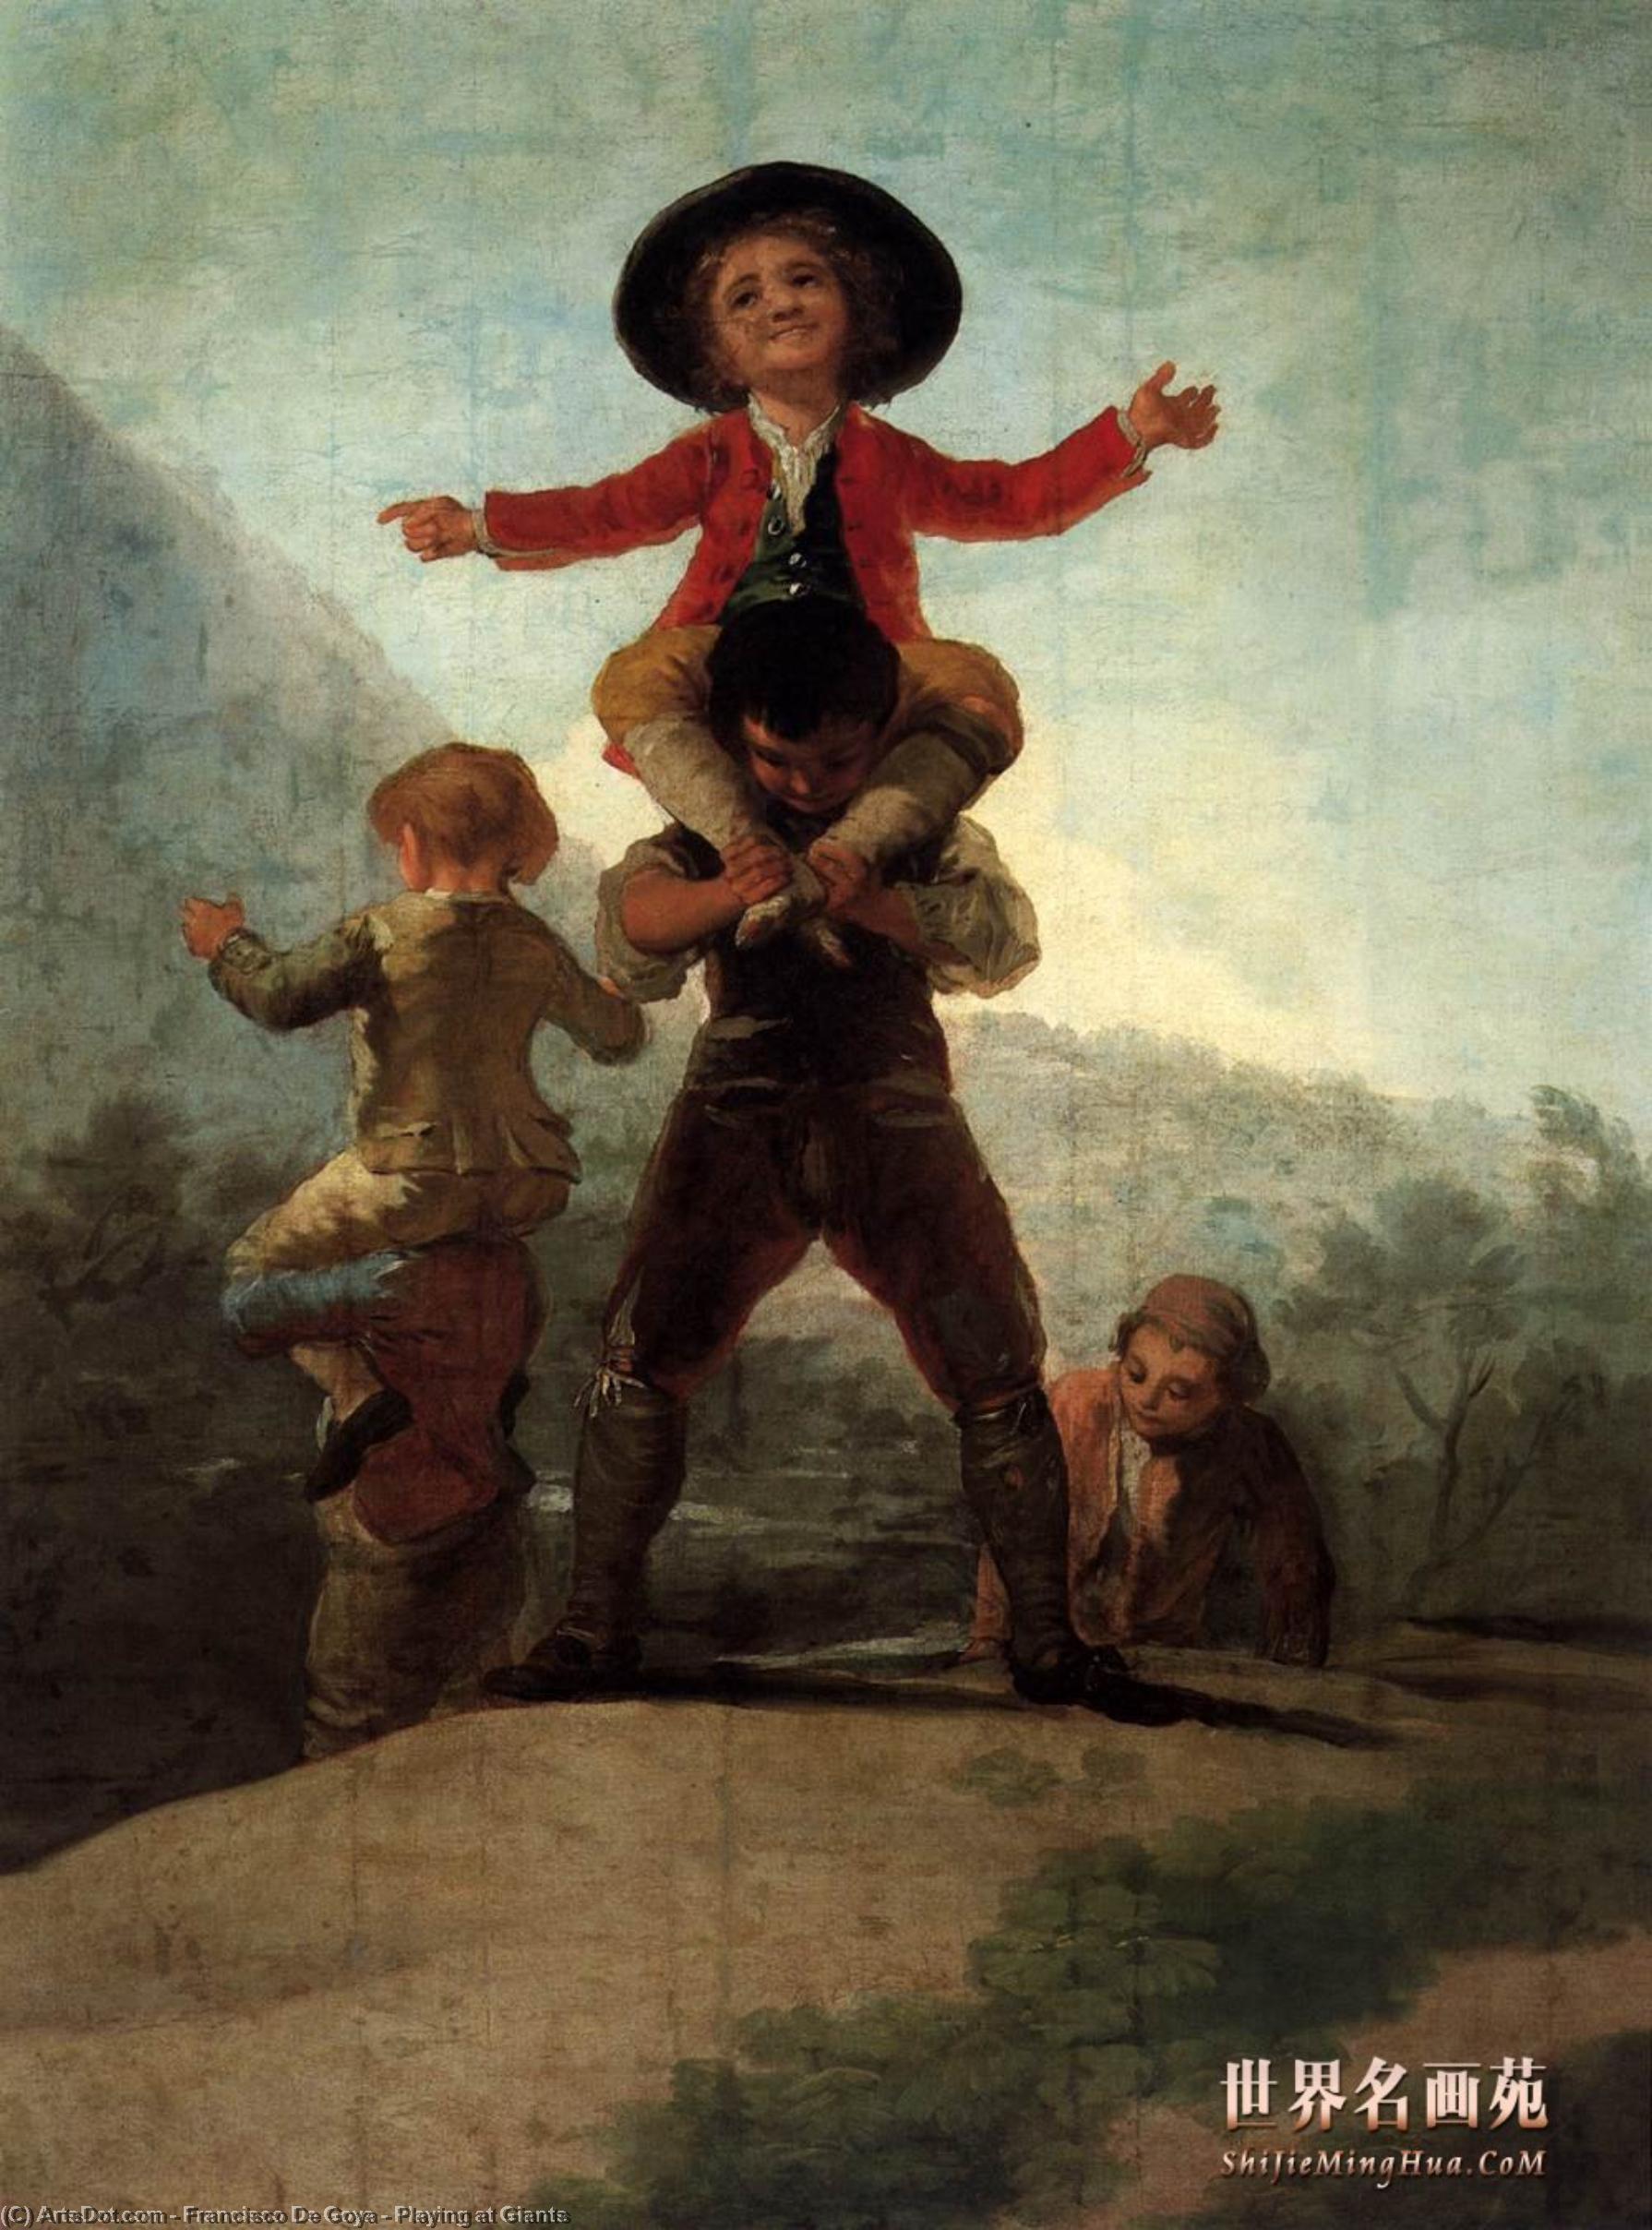 WikiOO.org - Энциклопедия изобразительного искусства - Живопись, Картины  Francisco De Goya - играть в Гиганты